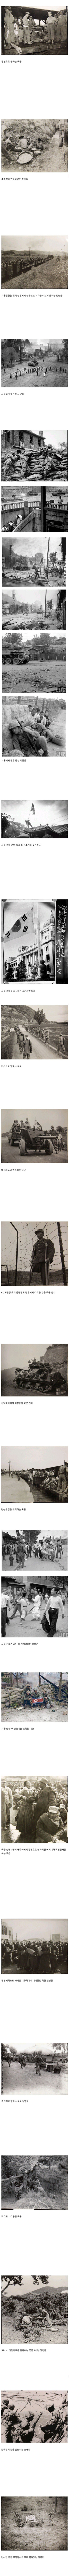 韓国戦争当時の写真jpg